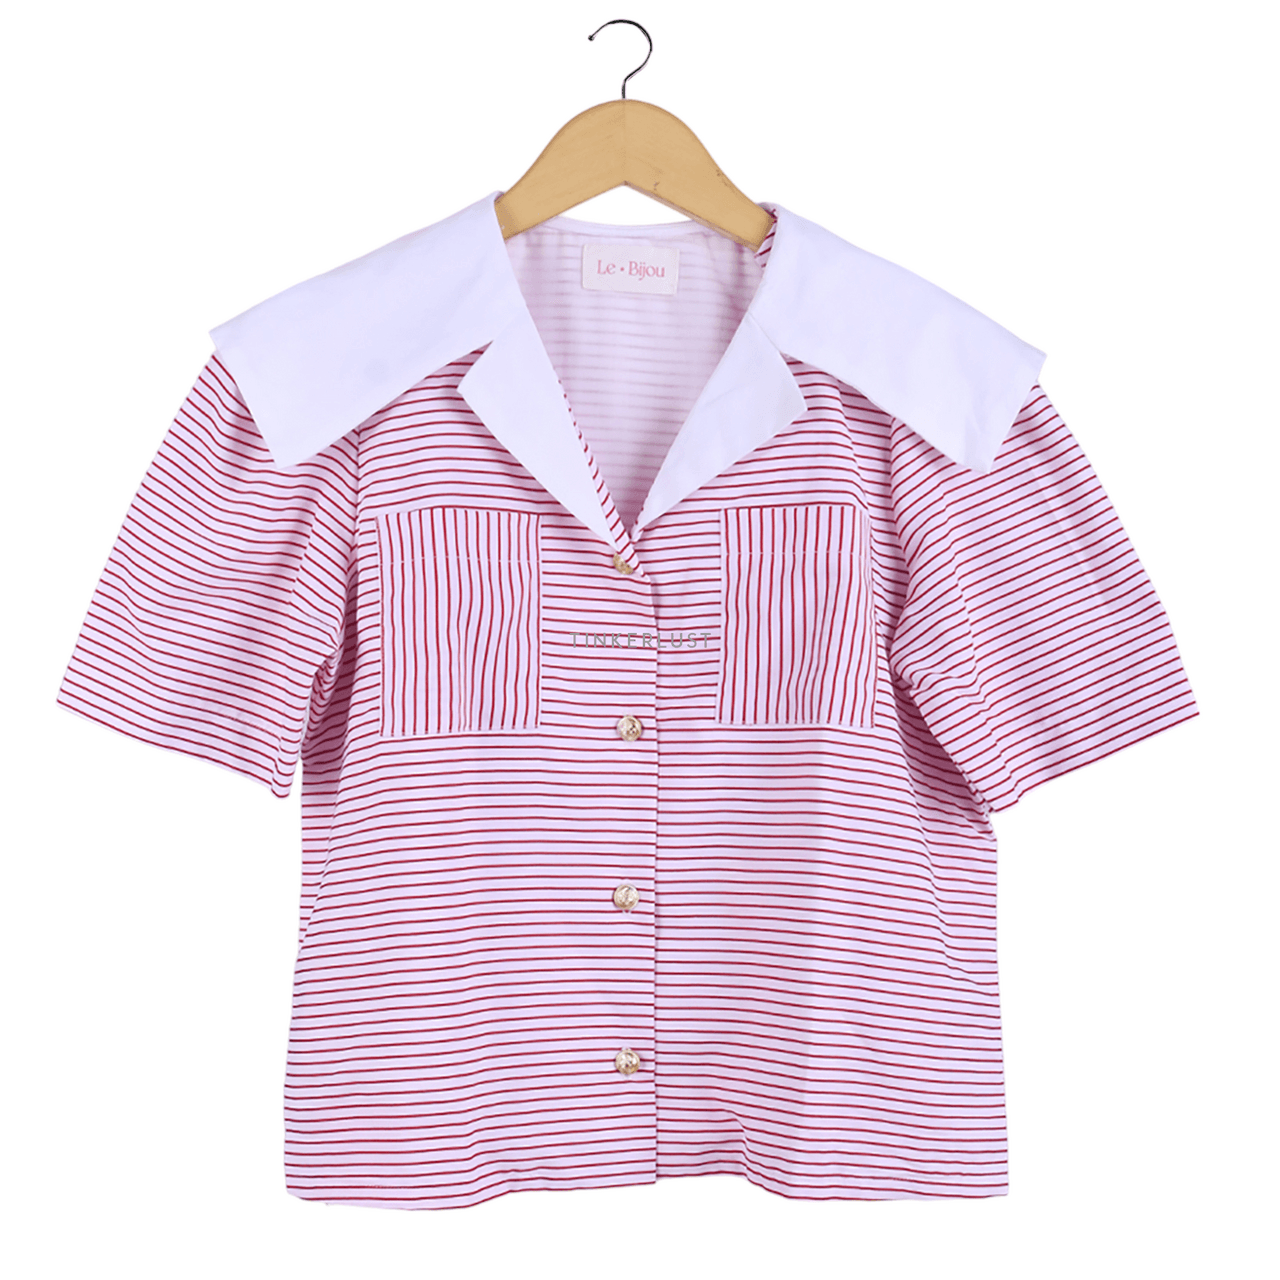 Le Bijou Pink Stripes Shirt